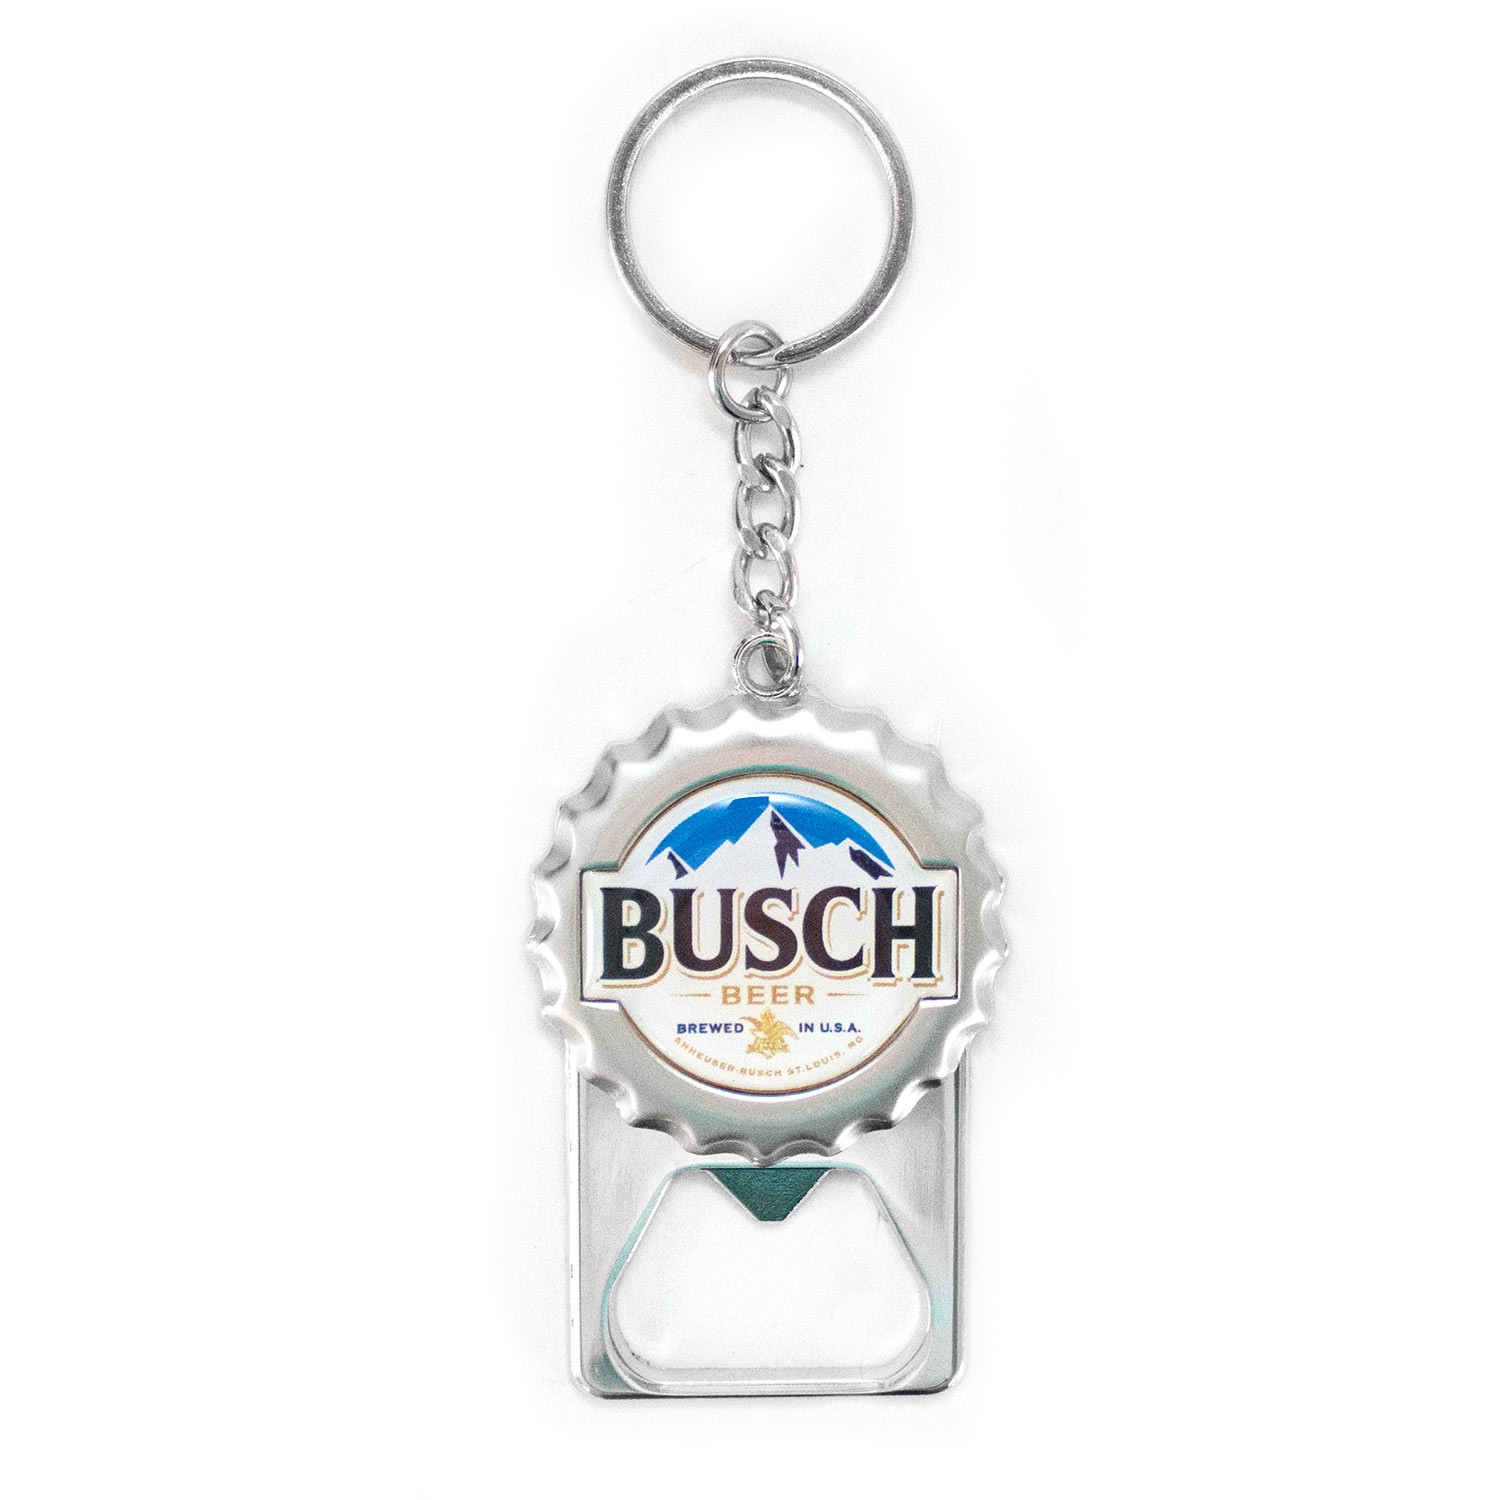 Budweiser Beer Baseball Bat Bottle Opener Keychain Key Chain White 3.5 inch New 